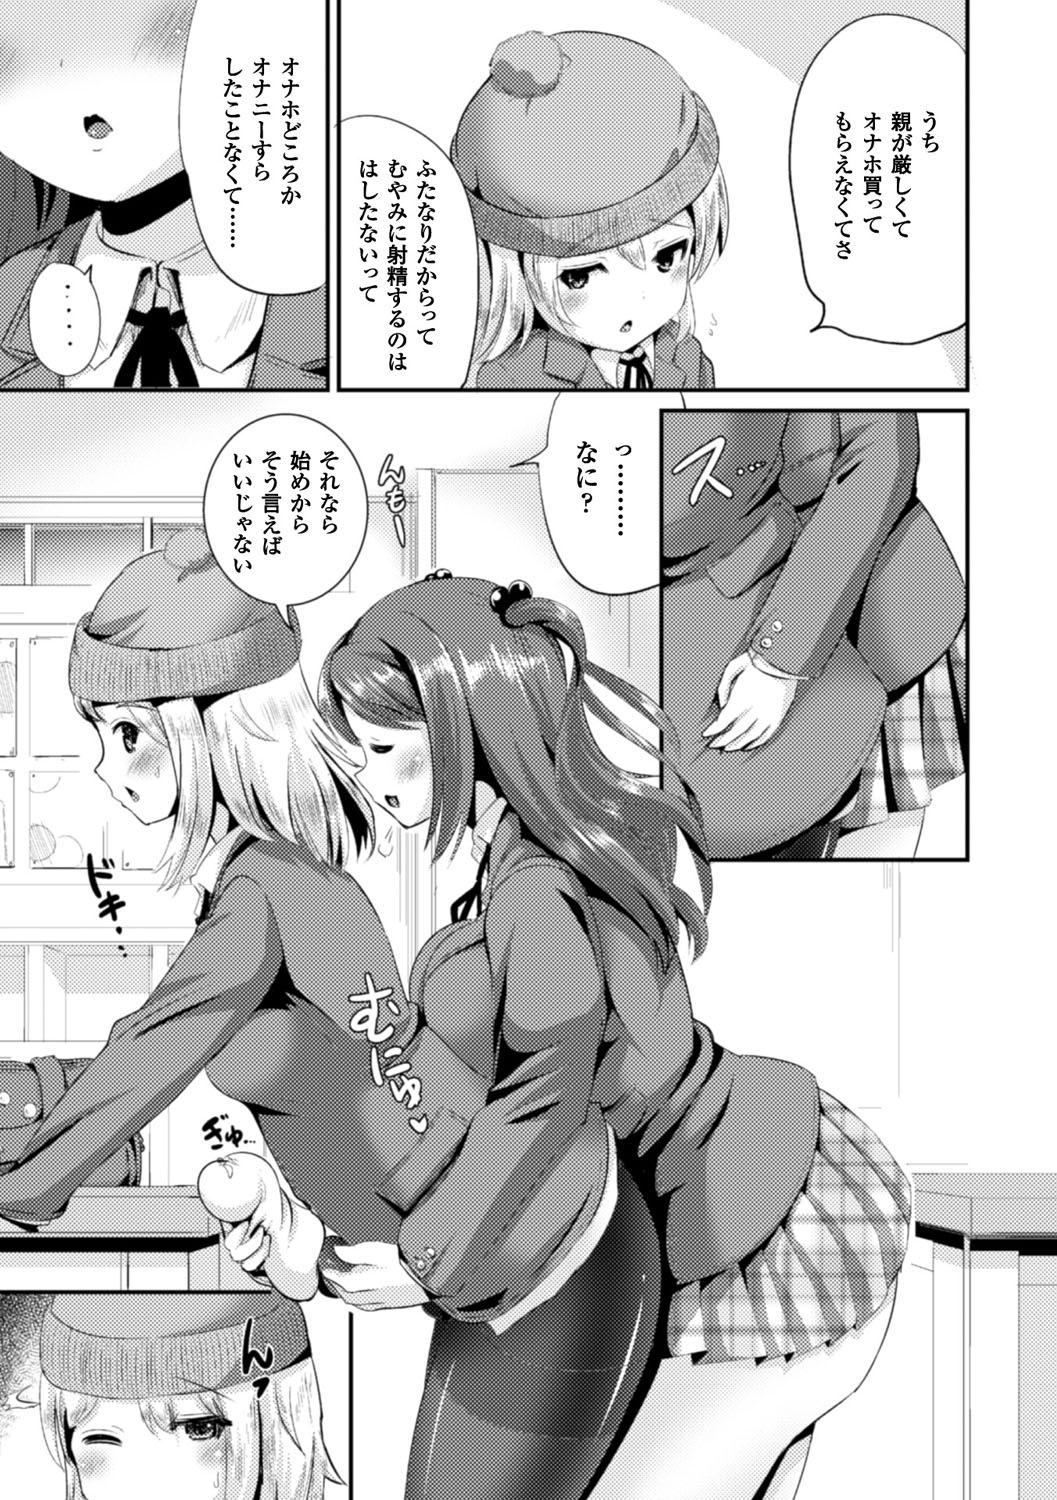 Women Sucking Dicks Bessatsu Comic Unreal Anthology Futanarikko Fantasia Digital Ban Vol. 6 Babes - Page 8